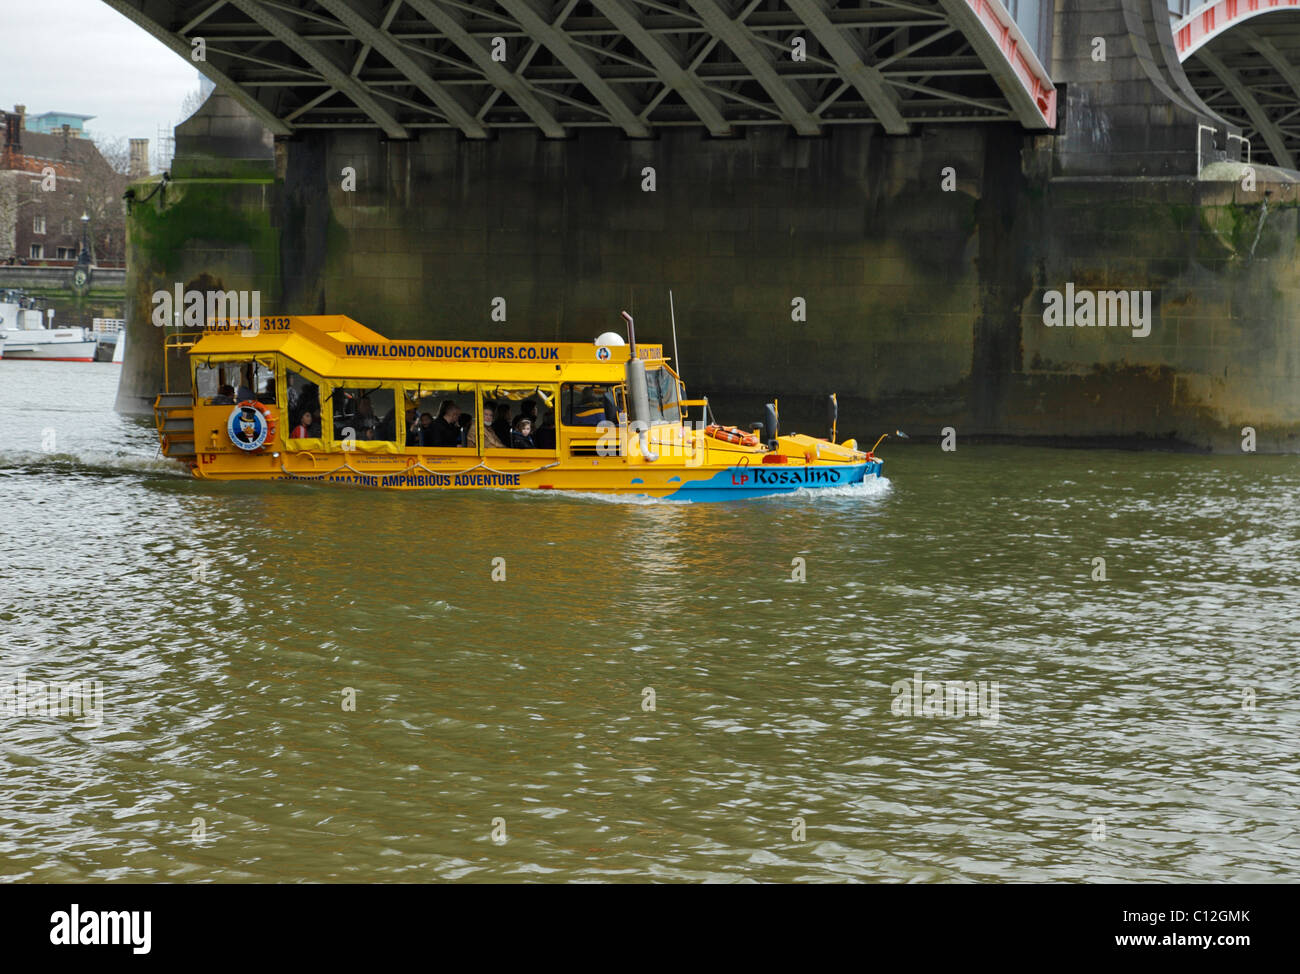 Duck Tours en barco anfibio pasando por debajo del puente de Lambeth, Londres. Foto de stock